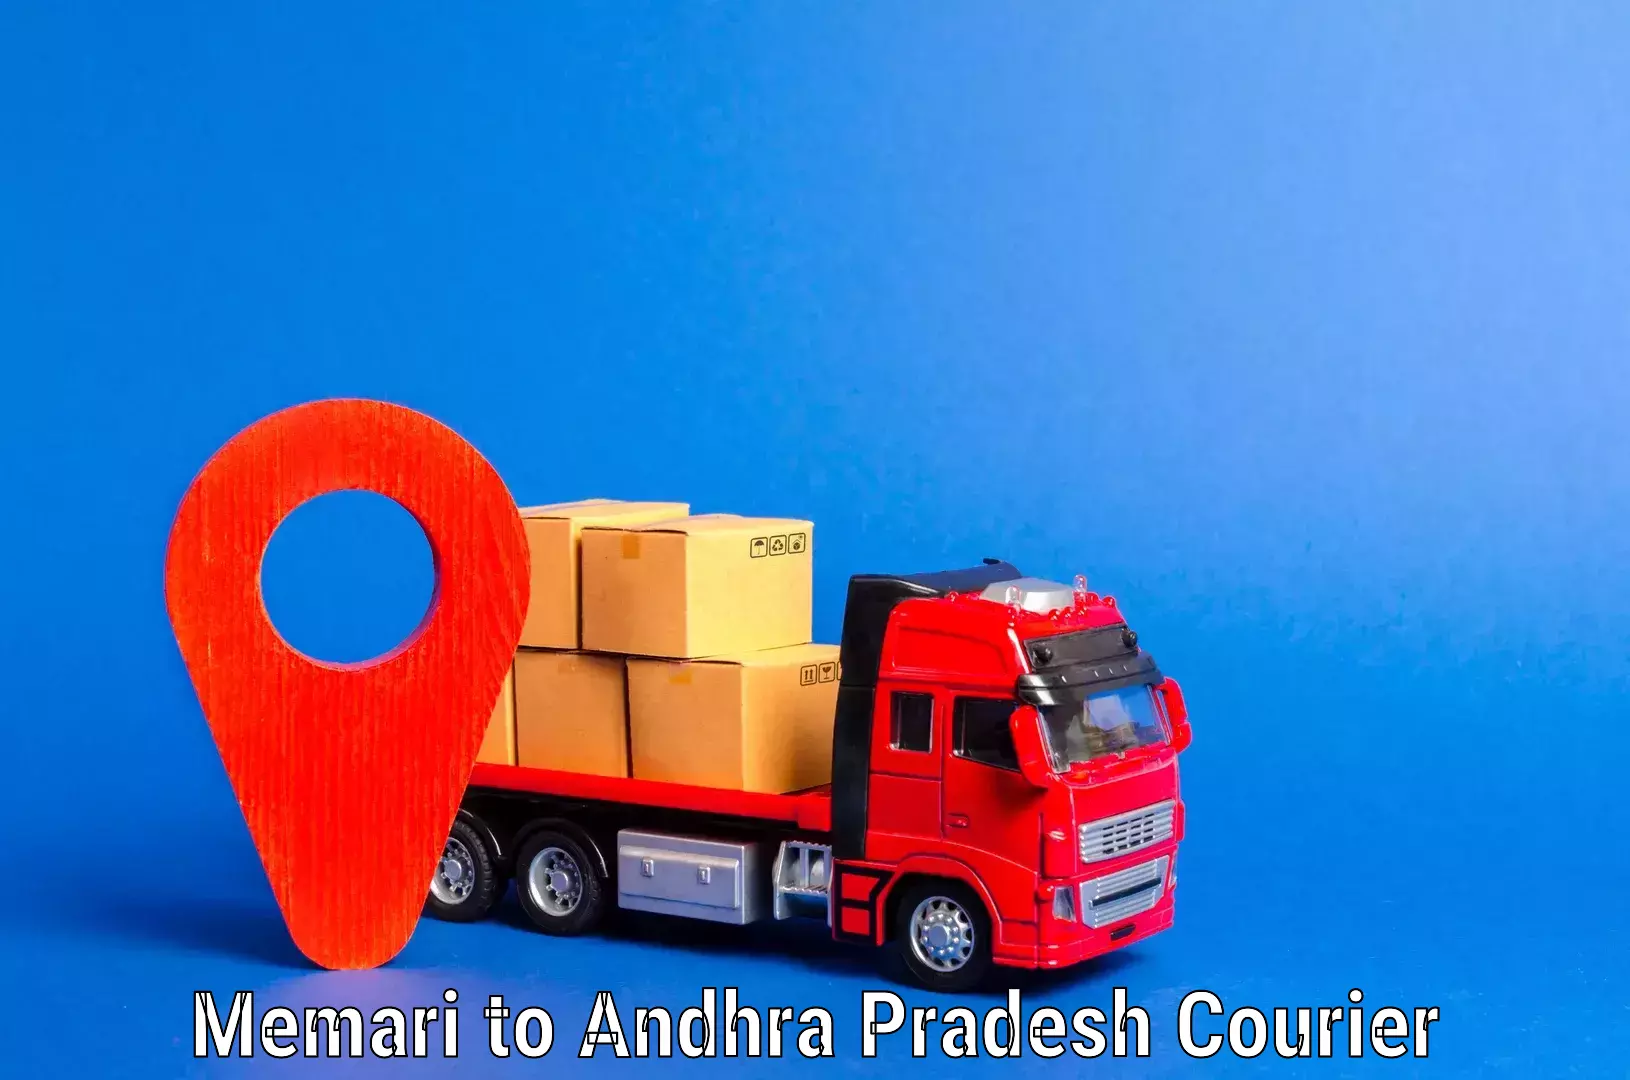 Skilled furniture movers Memari to Andhra Pradesh